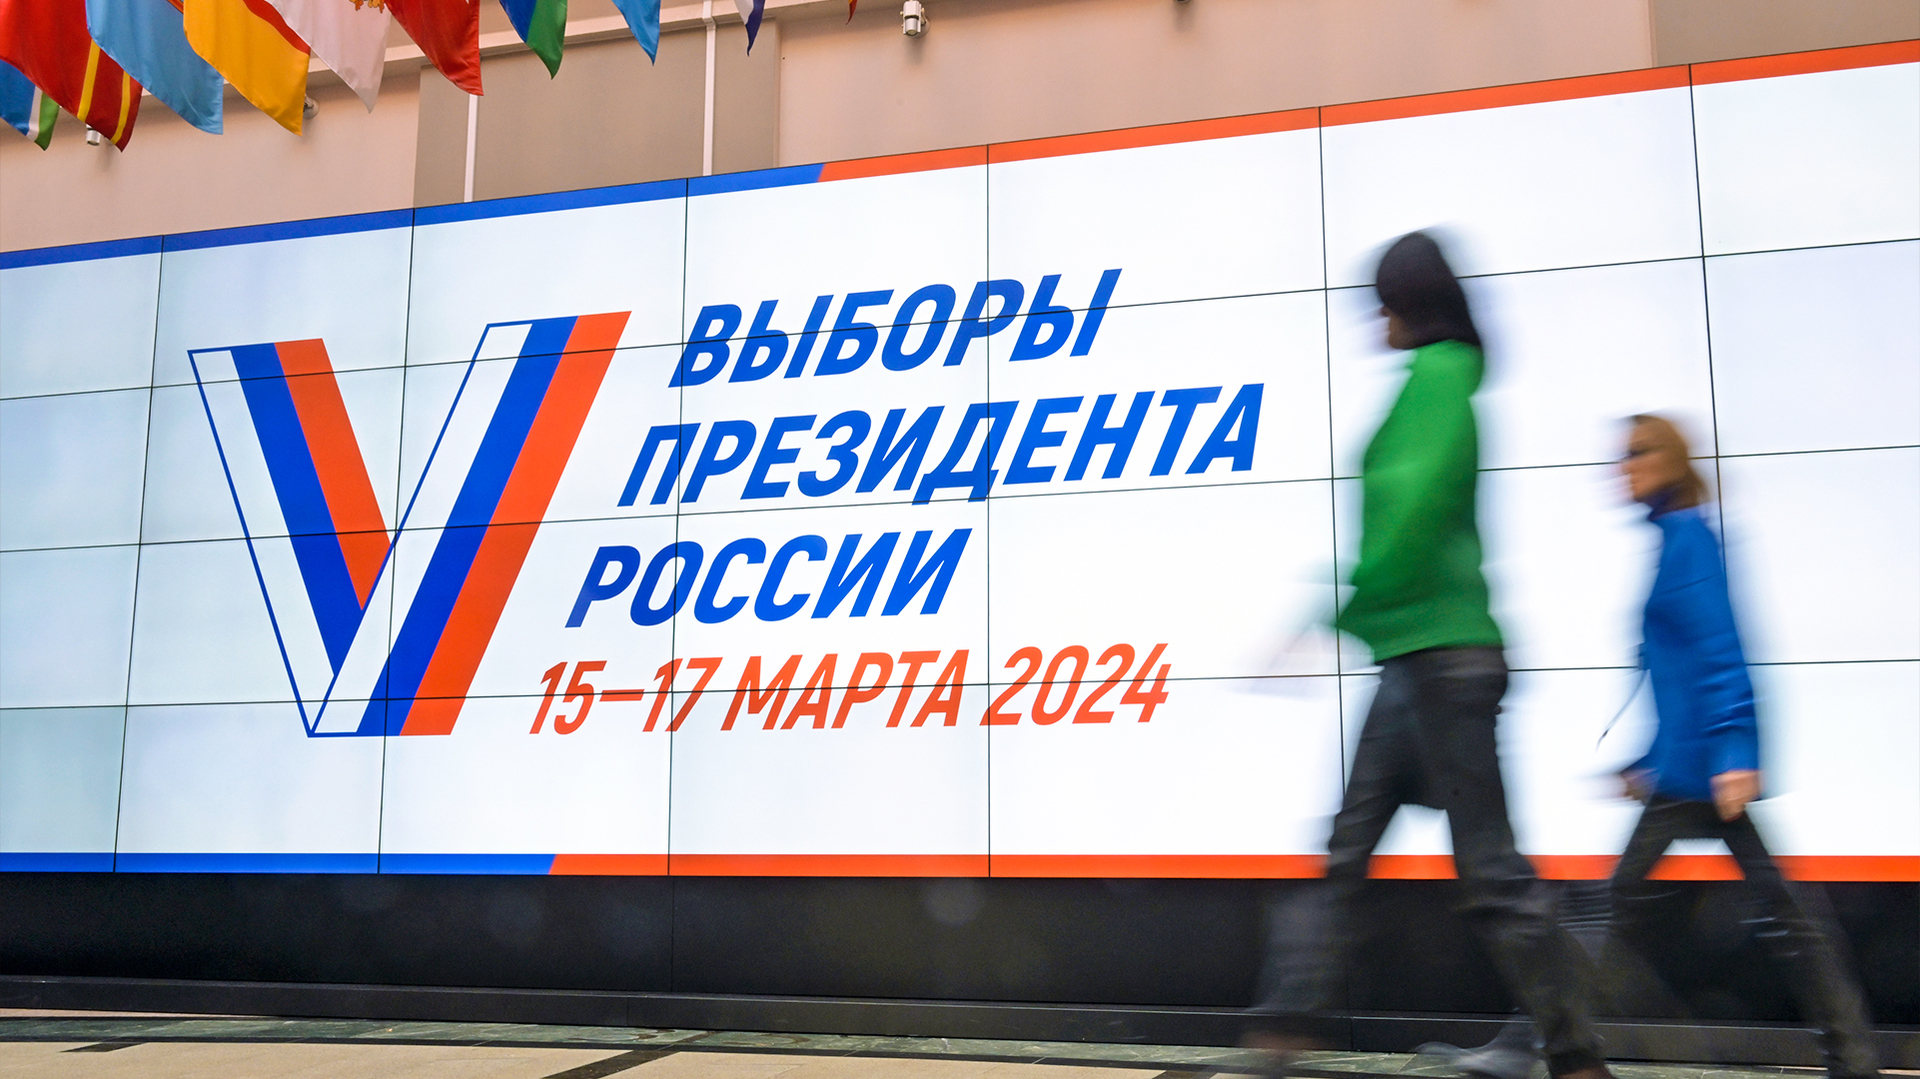 Conheça os candidatos à presidência da Rússia nas eleições